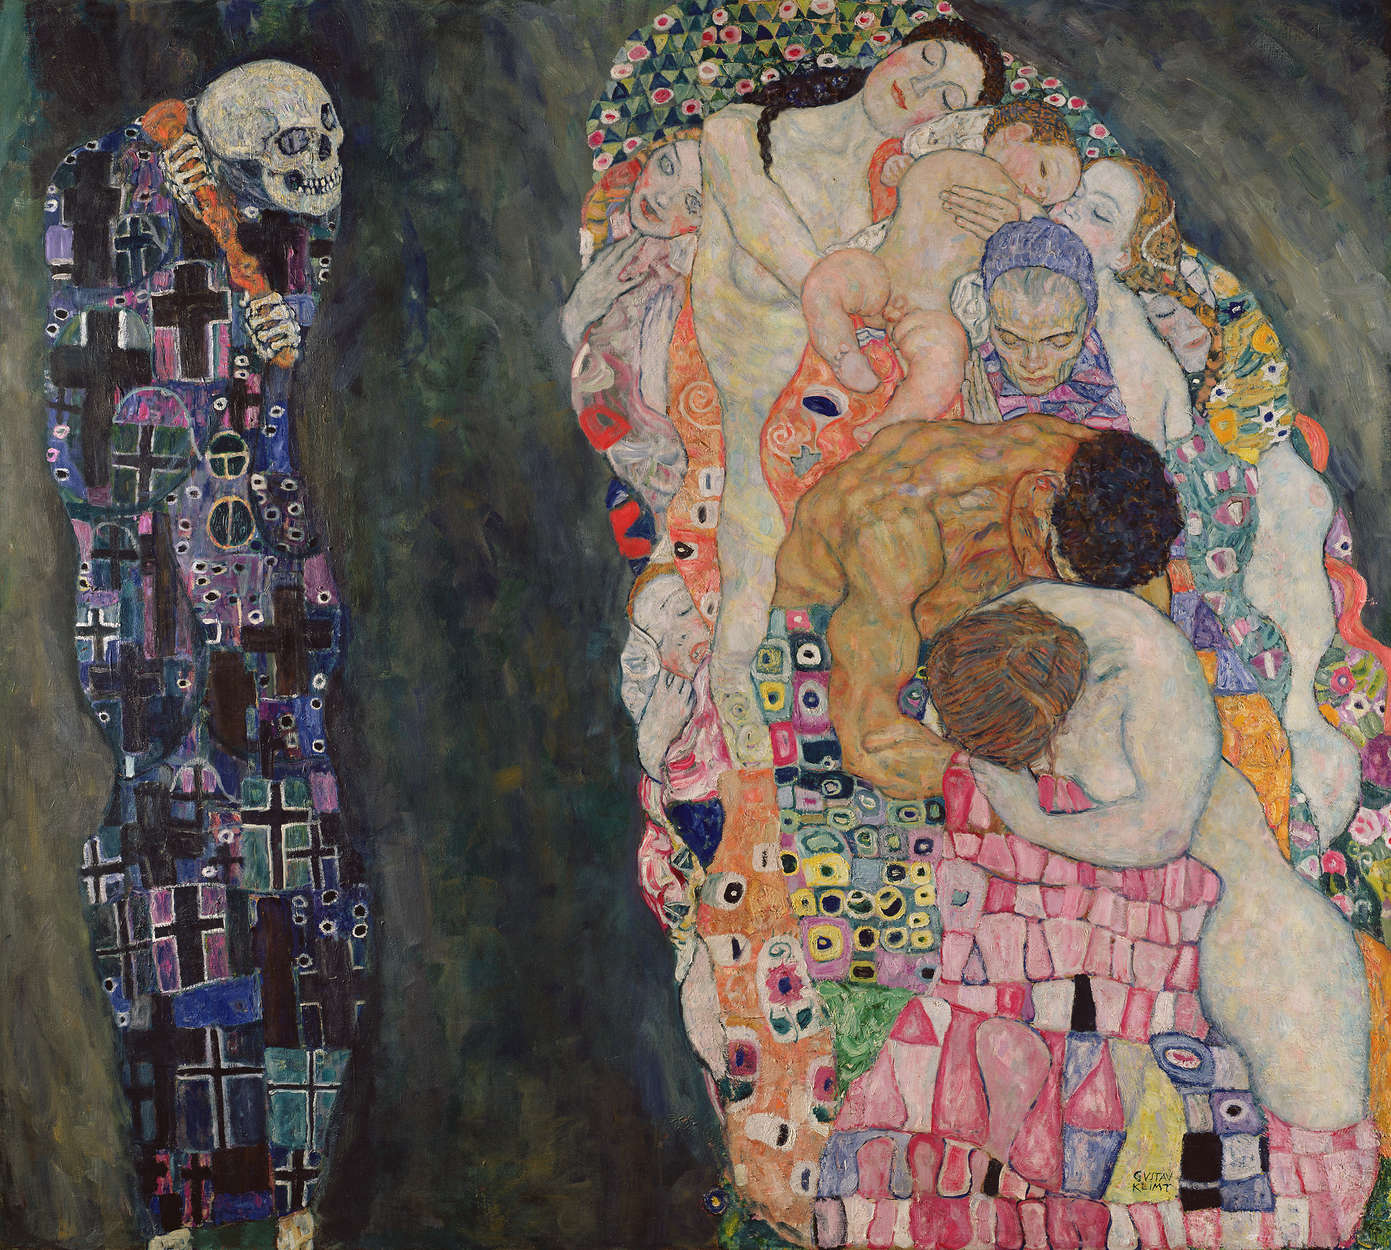             Muurschildering "Hygieia" van Gustav Klimt
        